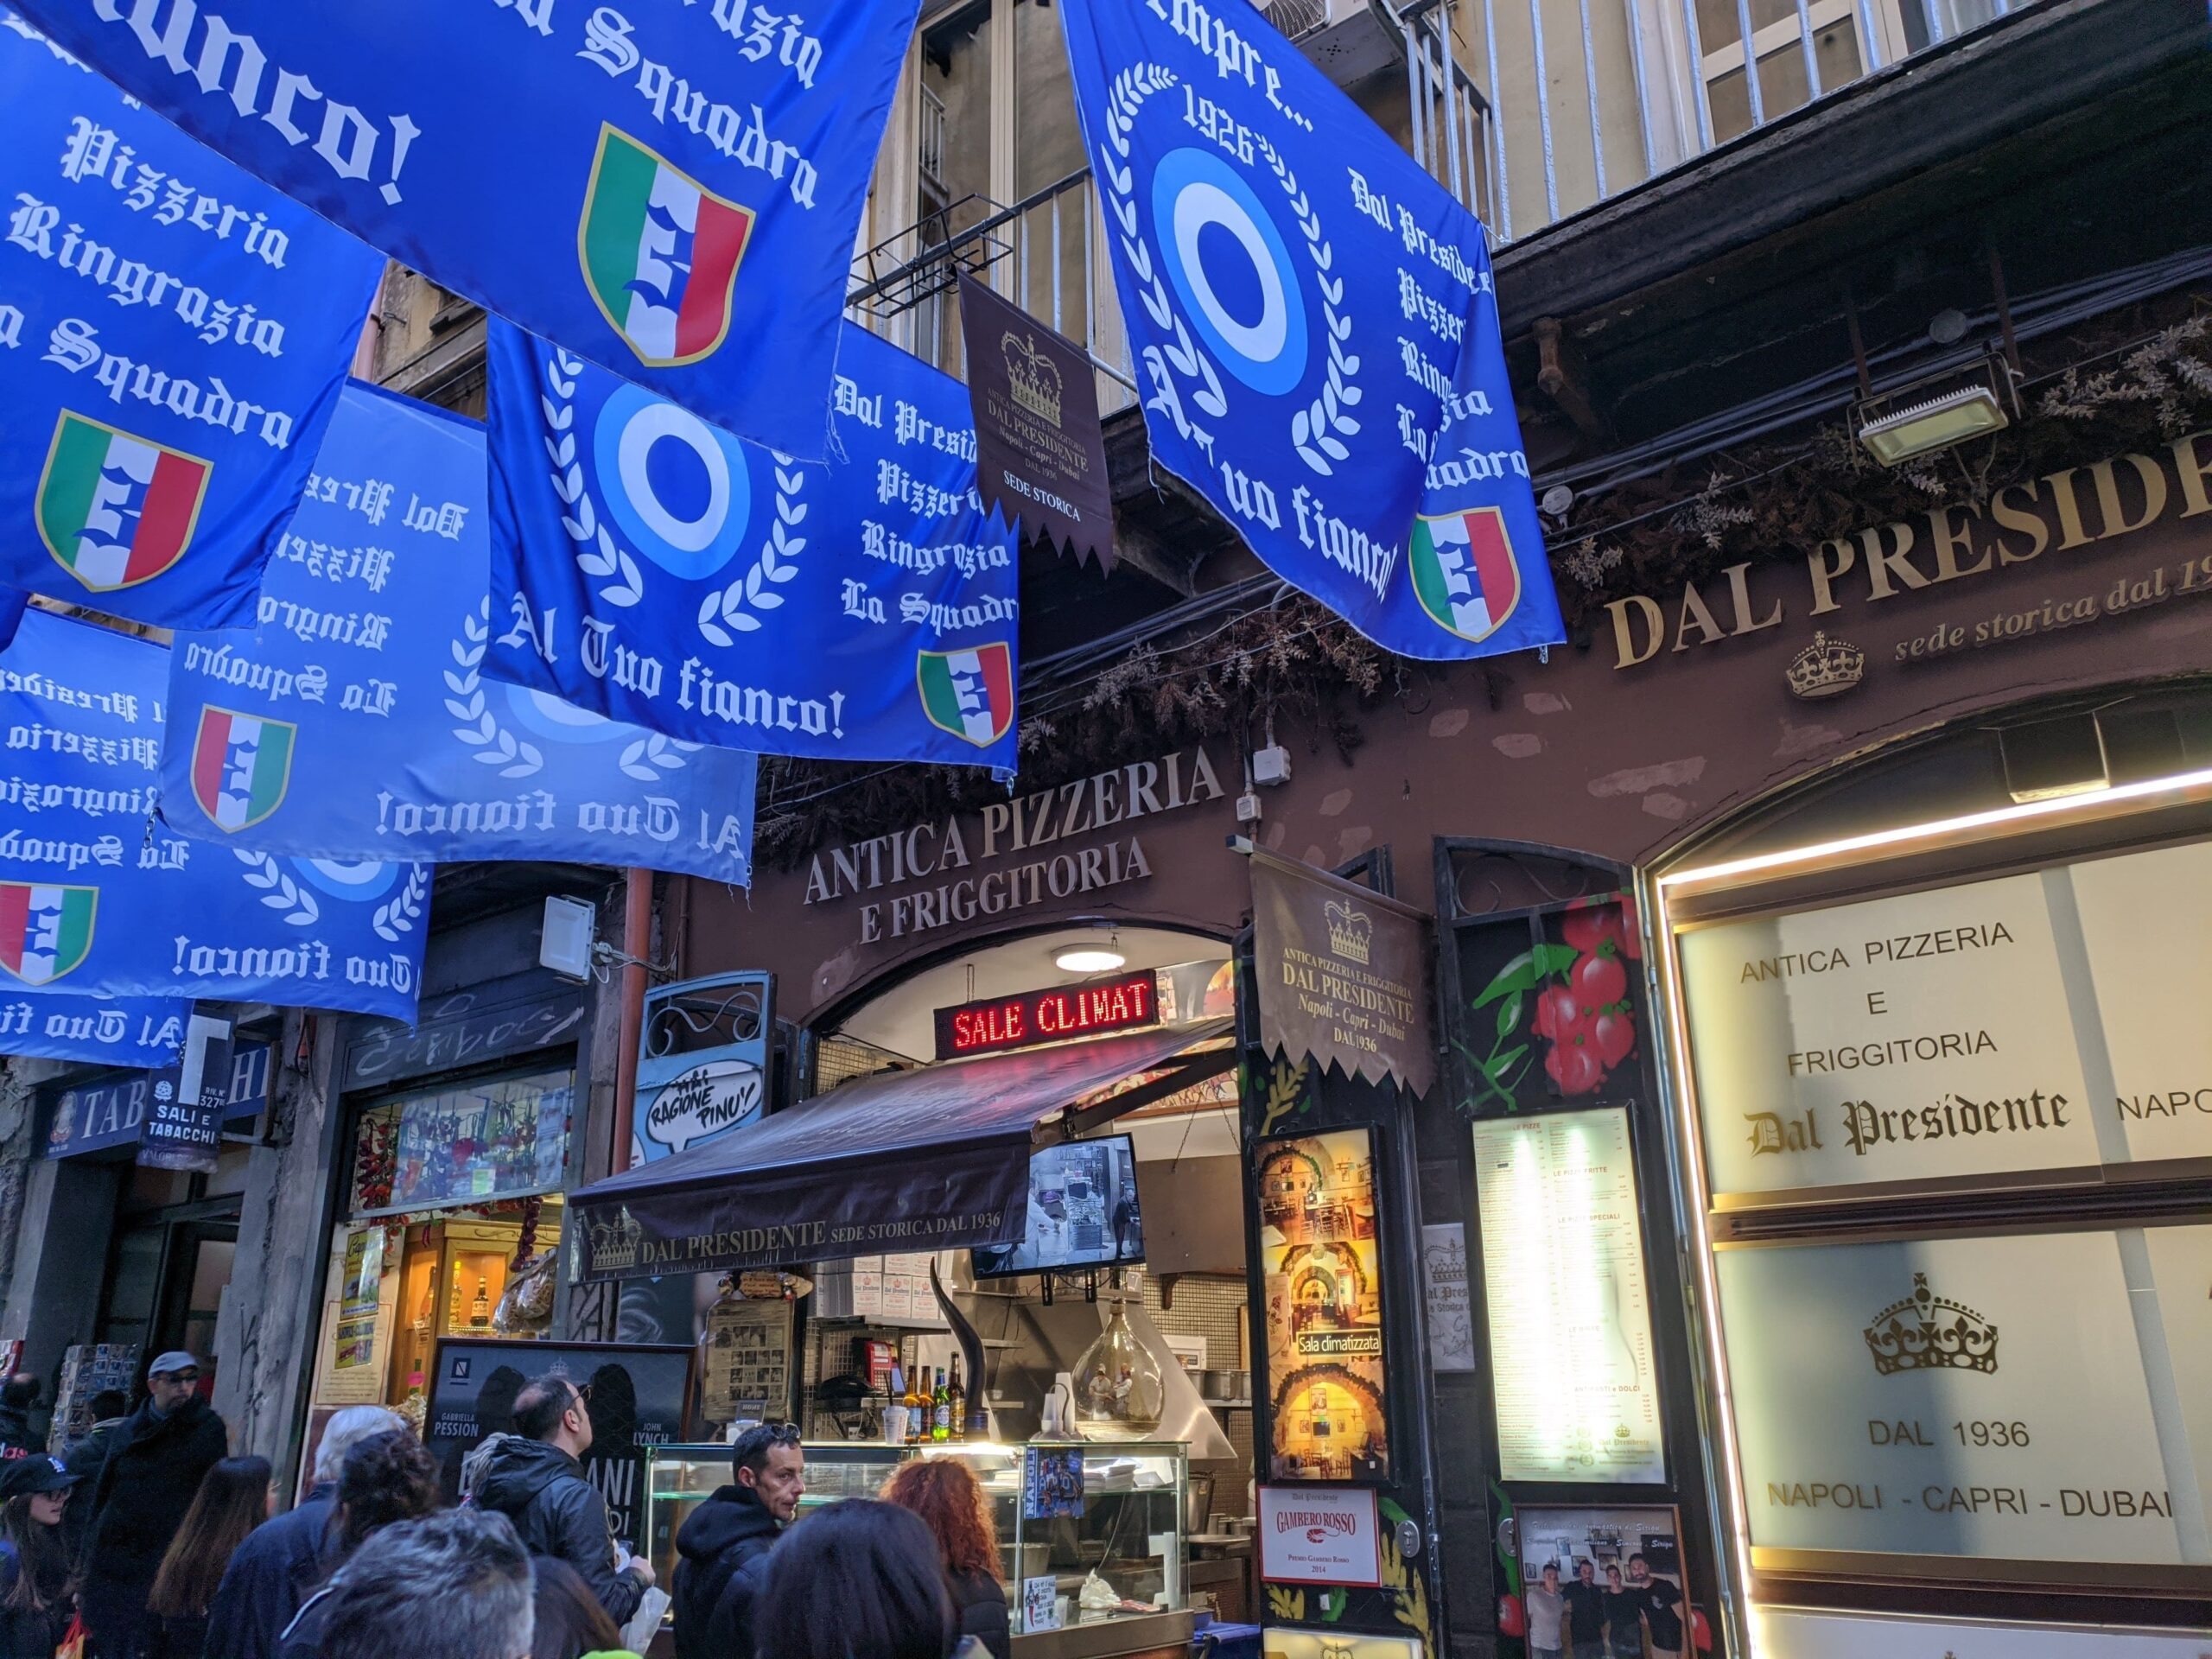 Fachada de uma pizzaria, com bandeiras azuis remetendo ao Napoli em cima dela, pessoas a sua frente e o letreiro com o seu nome em cima da porta "Pizzeria dal presidente"